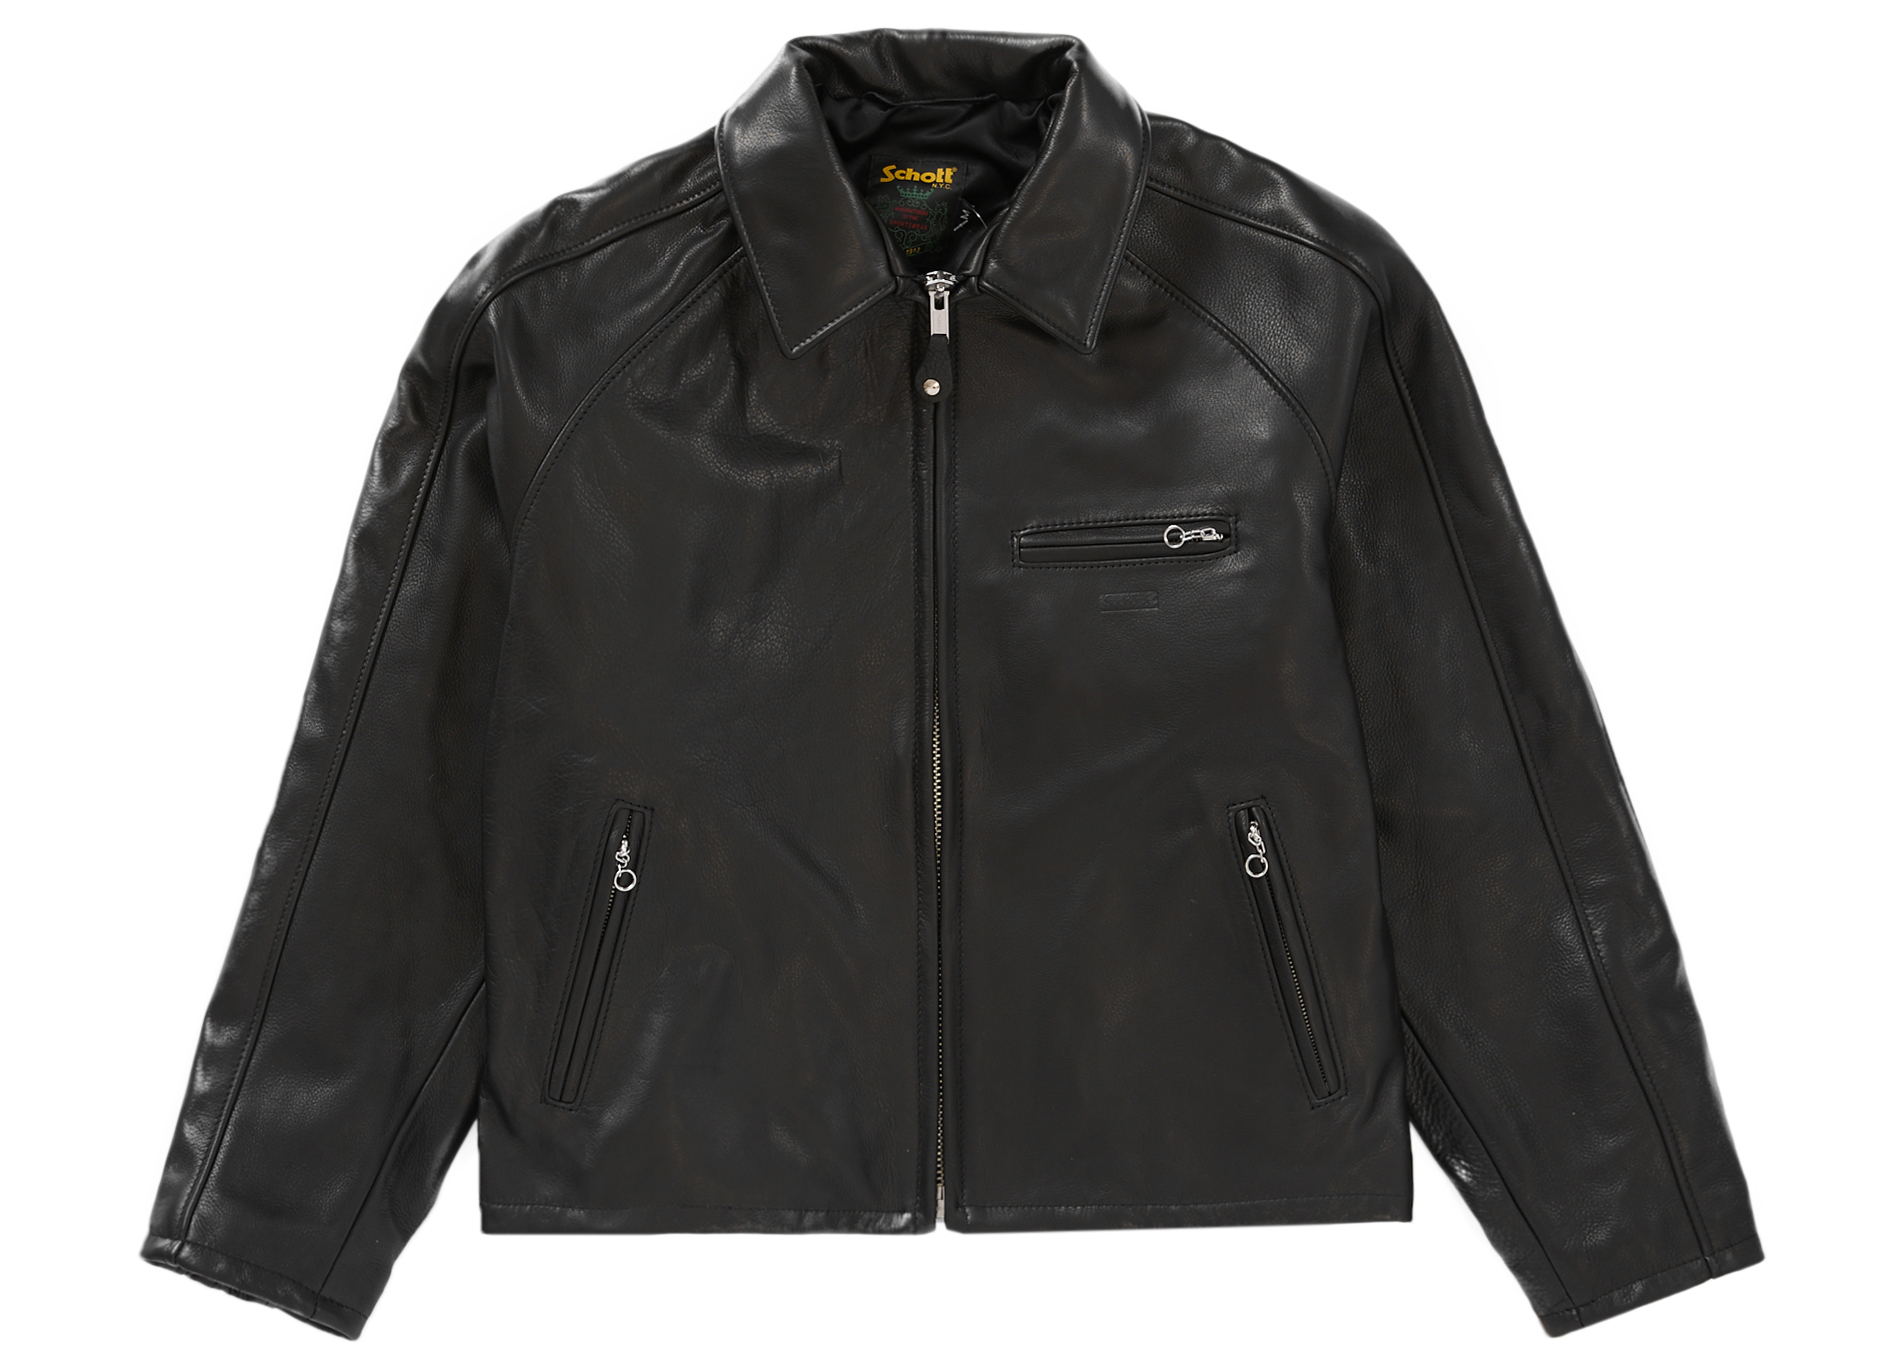 Schott Leather Racer Jacket "Black"